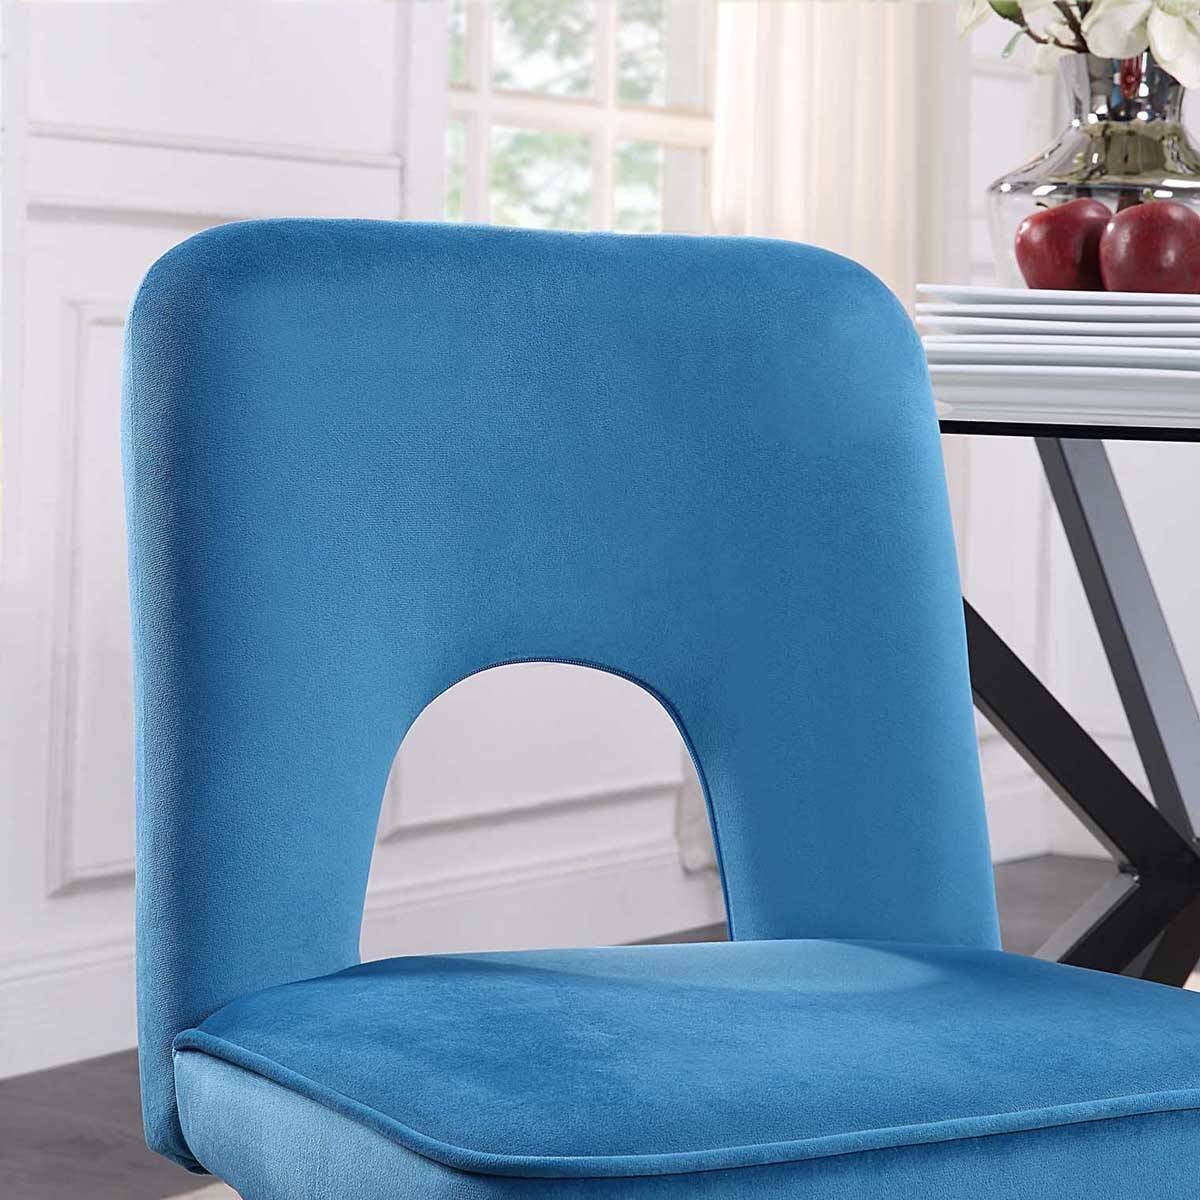 4D Concepts Nancy Chair Set